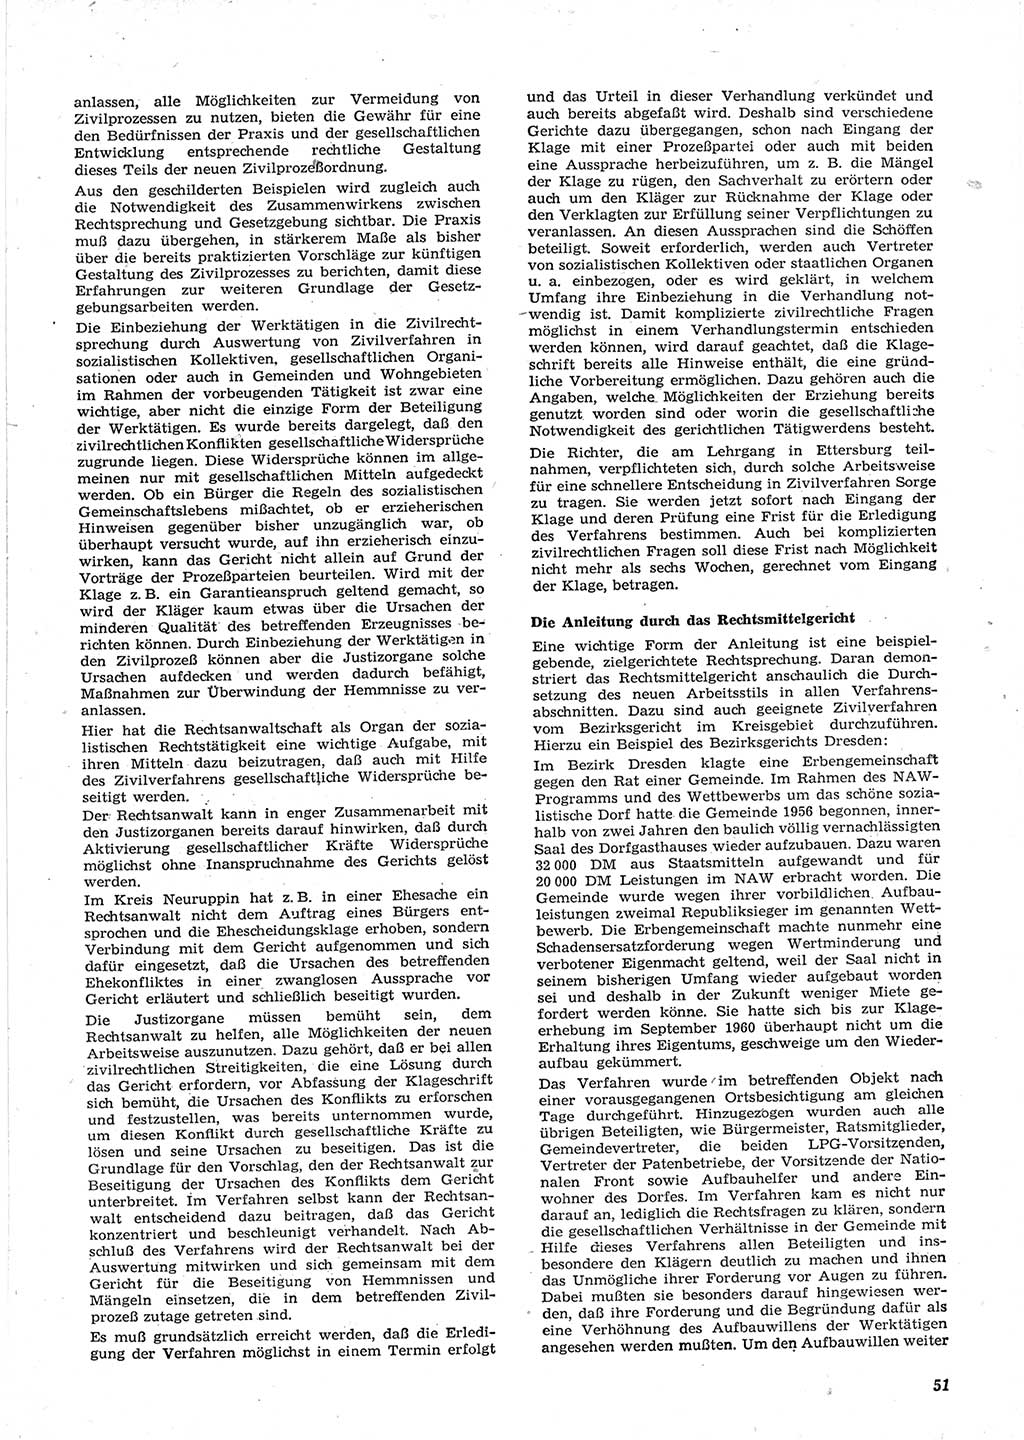 Neue Justiz (NJ), Zeitschrift für Recht und Rechtswissenschaft [Deutsche Demokratische Republik (DDR)], 15. Jahrgang 1961, Seite 51 (NJ DDR 1961, S. 51)